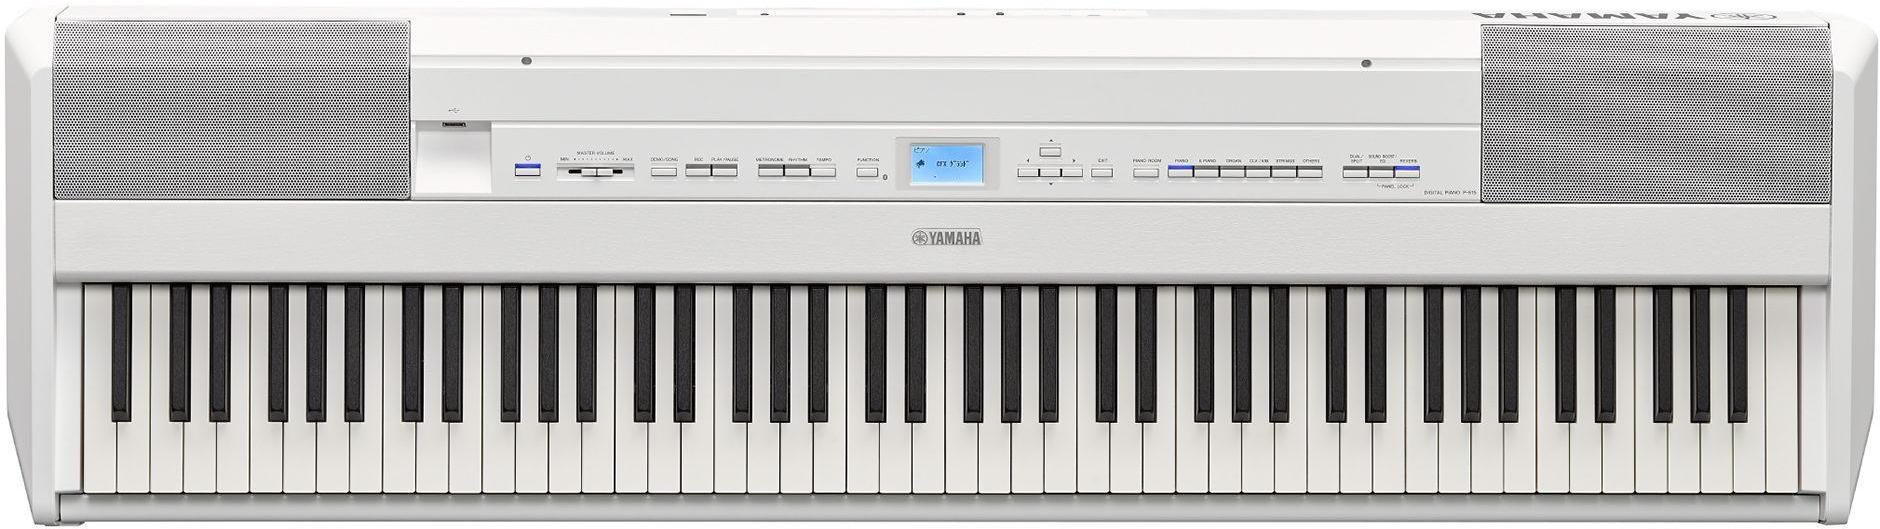 Piano numérique portable Yamaha P-515 - White